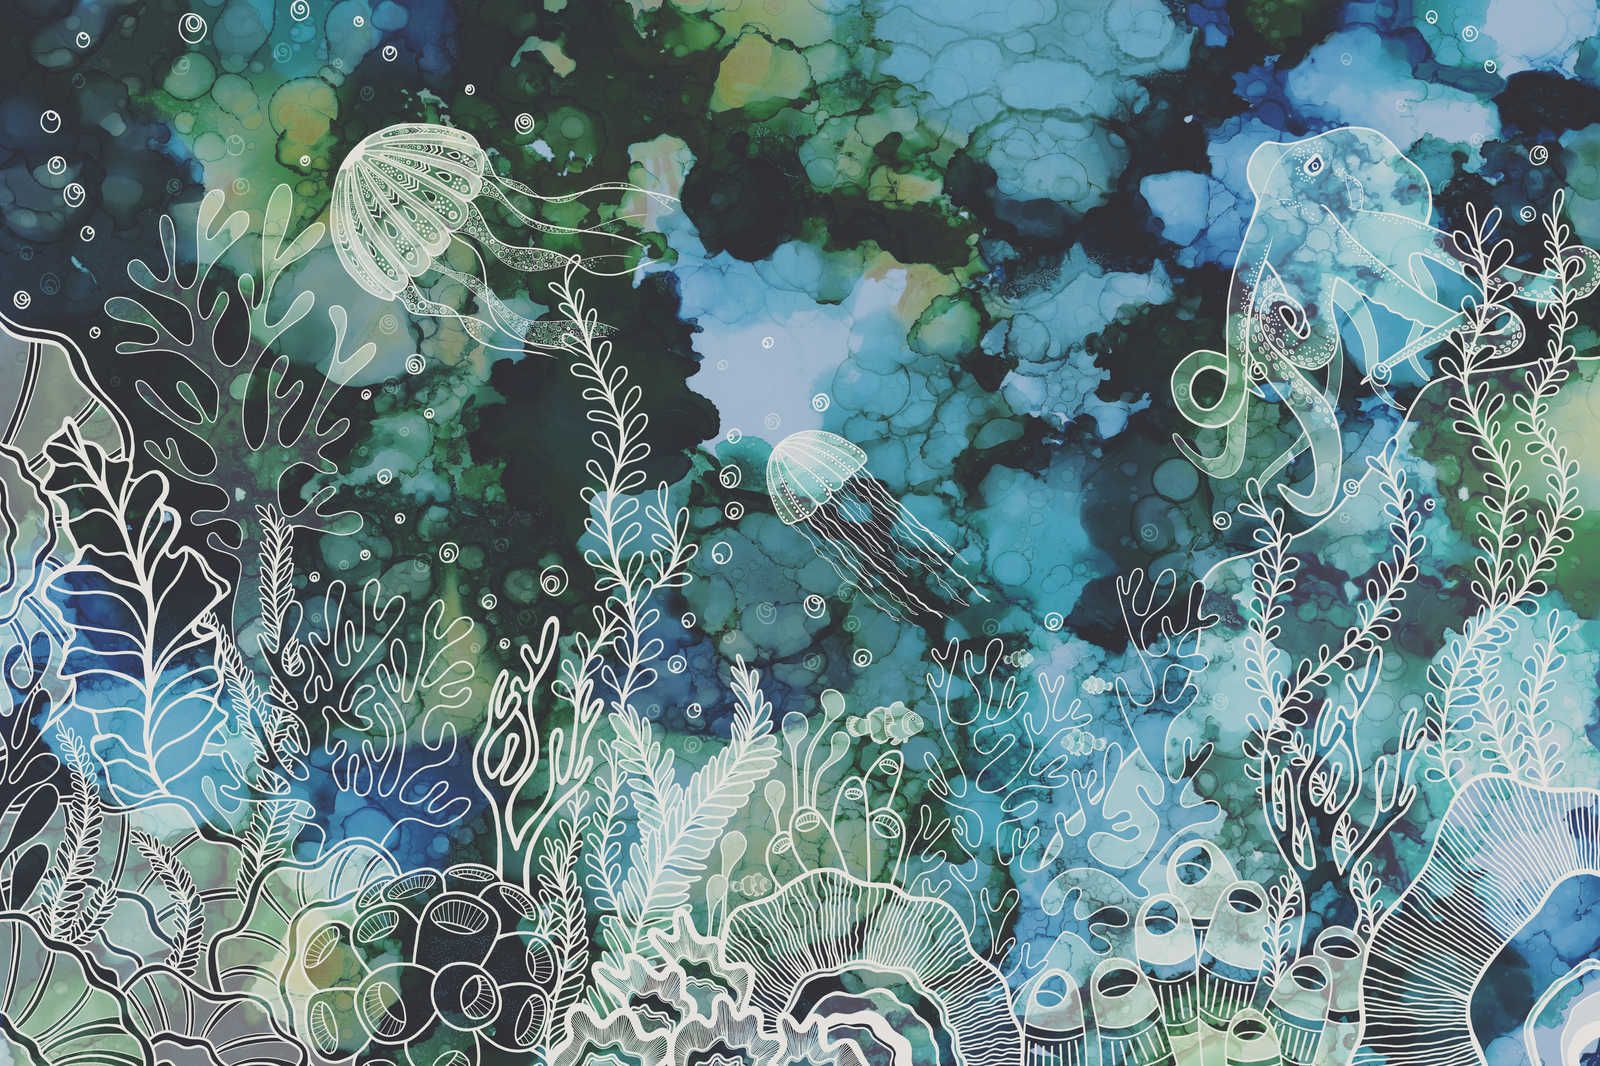             Canvas schilderij met onderwater koraalrif in acrylverf - 1,20 m x 0,80 m
        